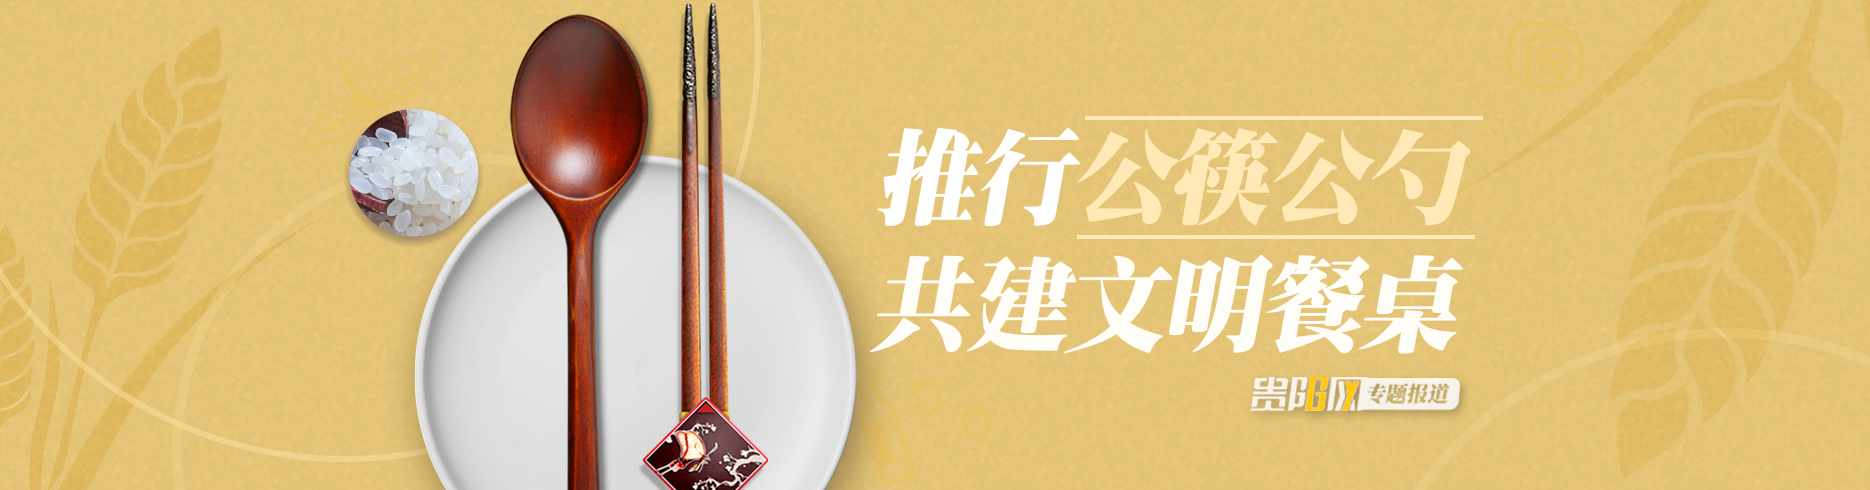 推行公筷公勺 共建文明餐桌